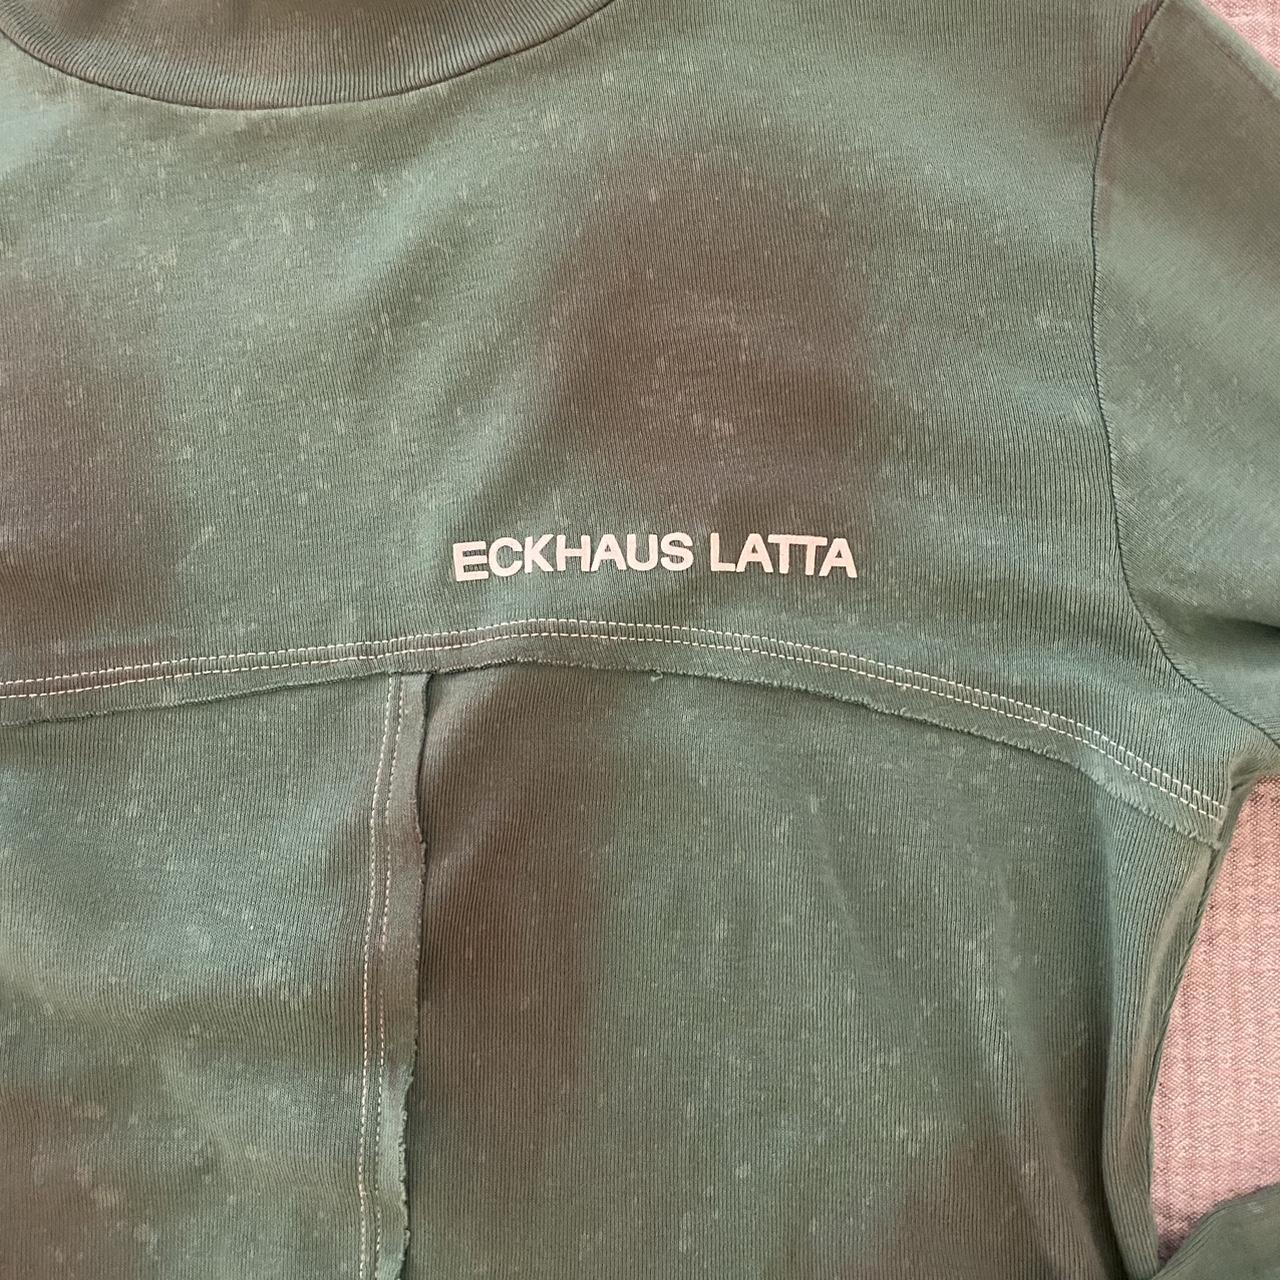 Eckhaus Latta Women's Green and Grey T-shirt (2)